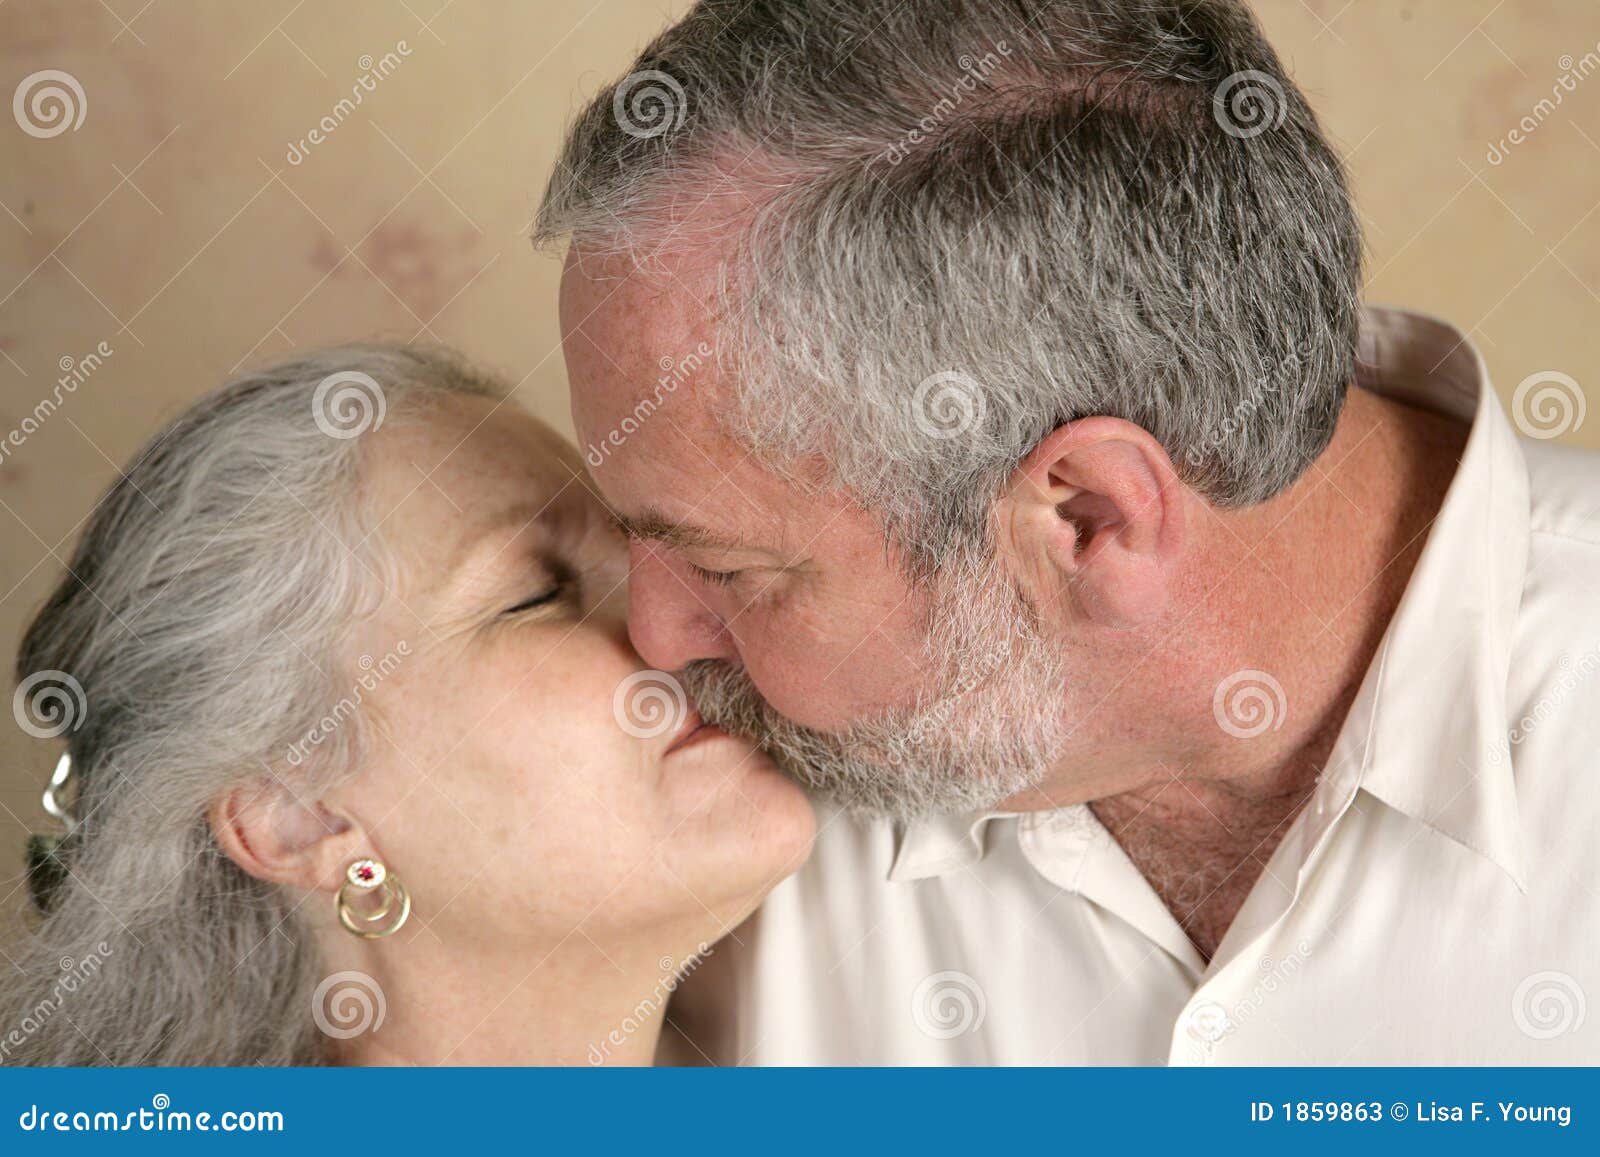 Страстные зрелые мужчины. Поцелуй пожилых. Поцелуй взрослой пары. Страстный поцелуй пожилых людей. Поцелуй пожилого человека даме.